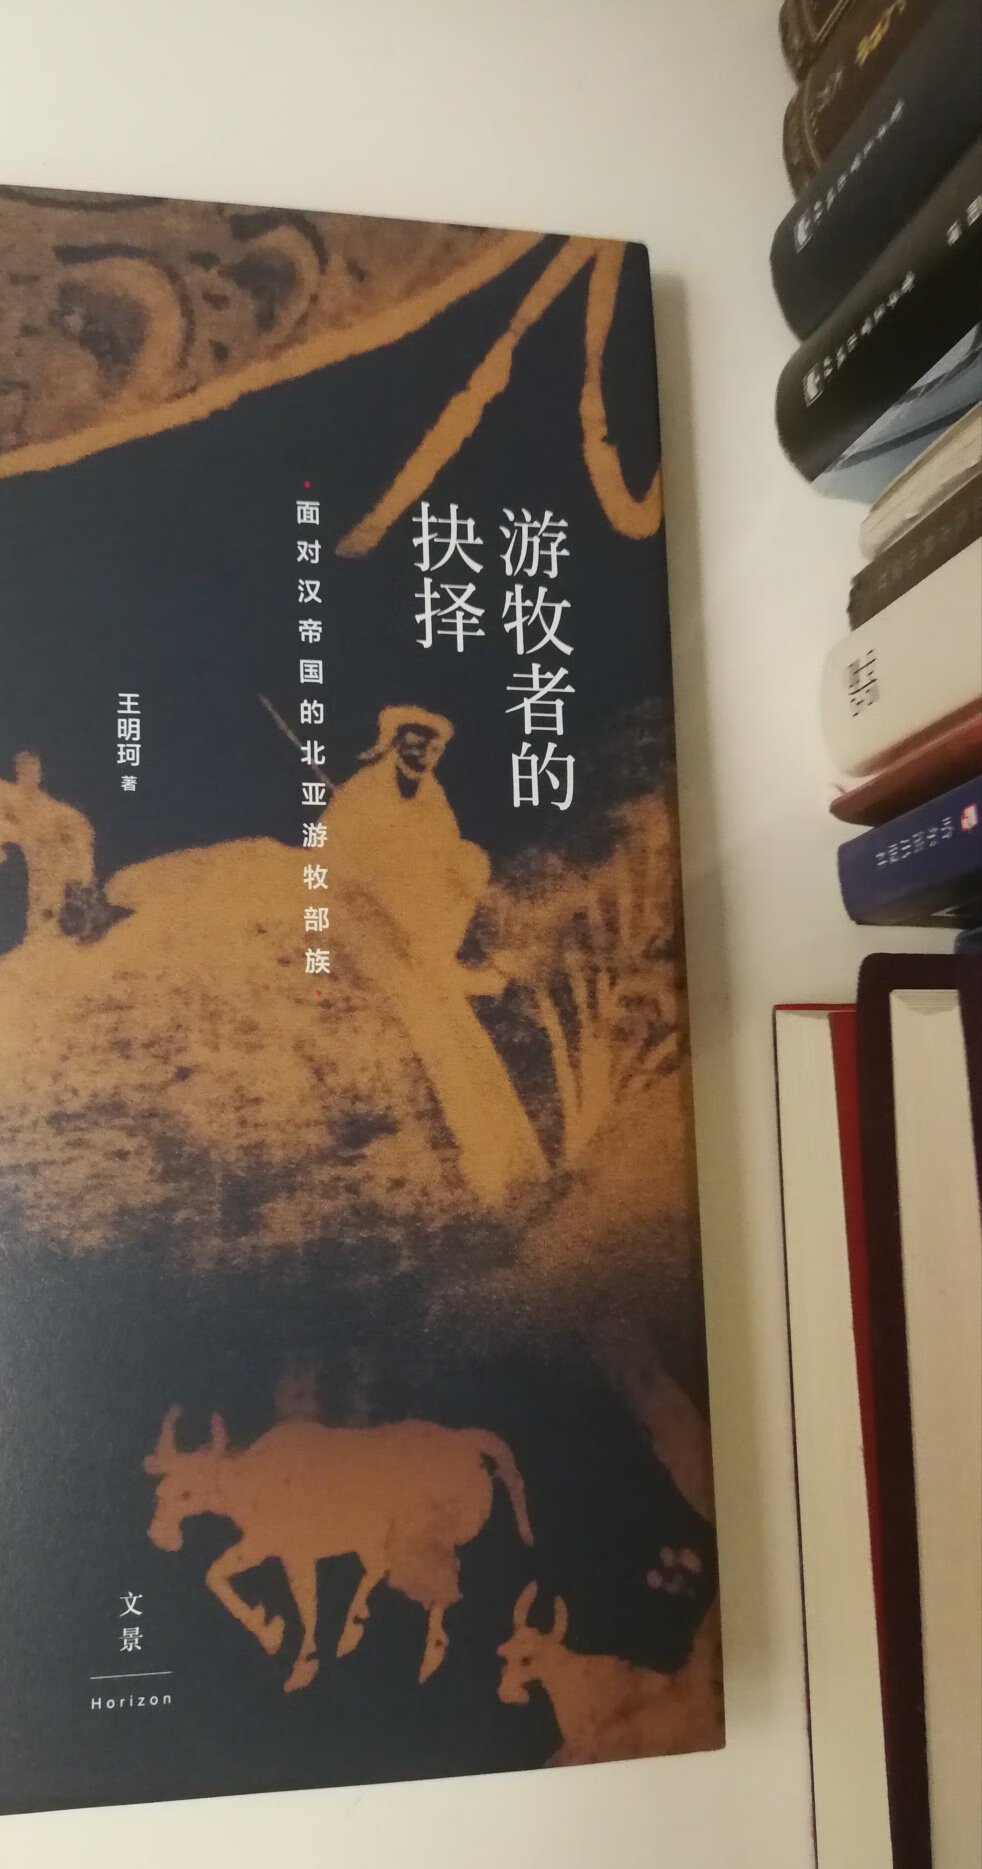 内容细致，对了解汉代中国与北方游牧民族的活动历史很有帮助。